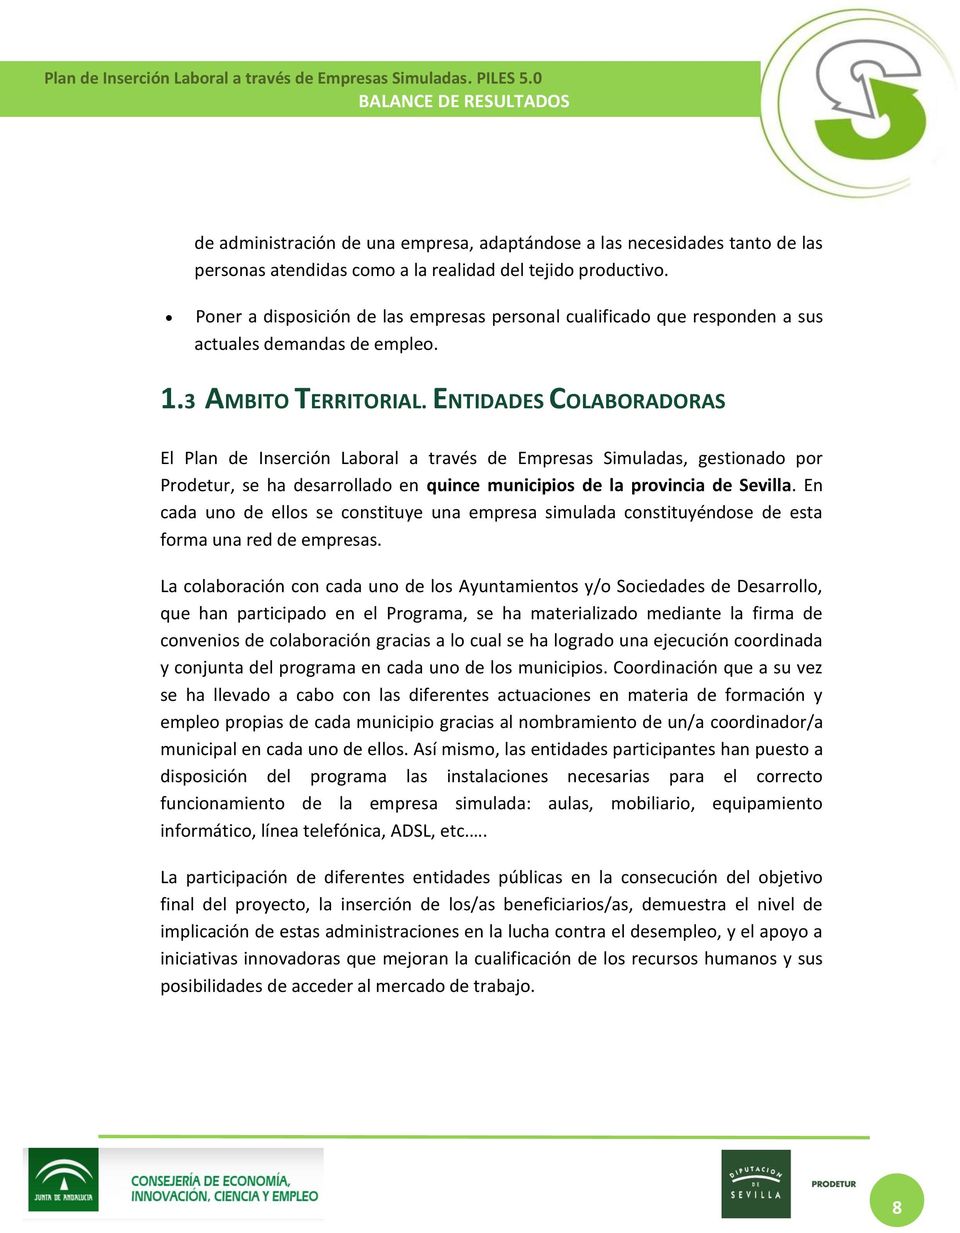 ENTIDADES COLABORADORAS El Plan de Inserción Laboral a través de Empresas Simuladas, gestionado por Prodetur, se ha desarrollado en quince municipios de la provincia de Sevilla.